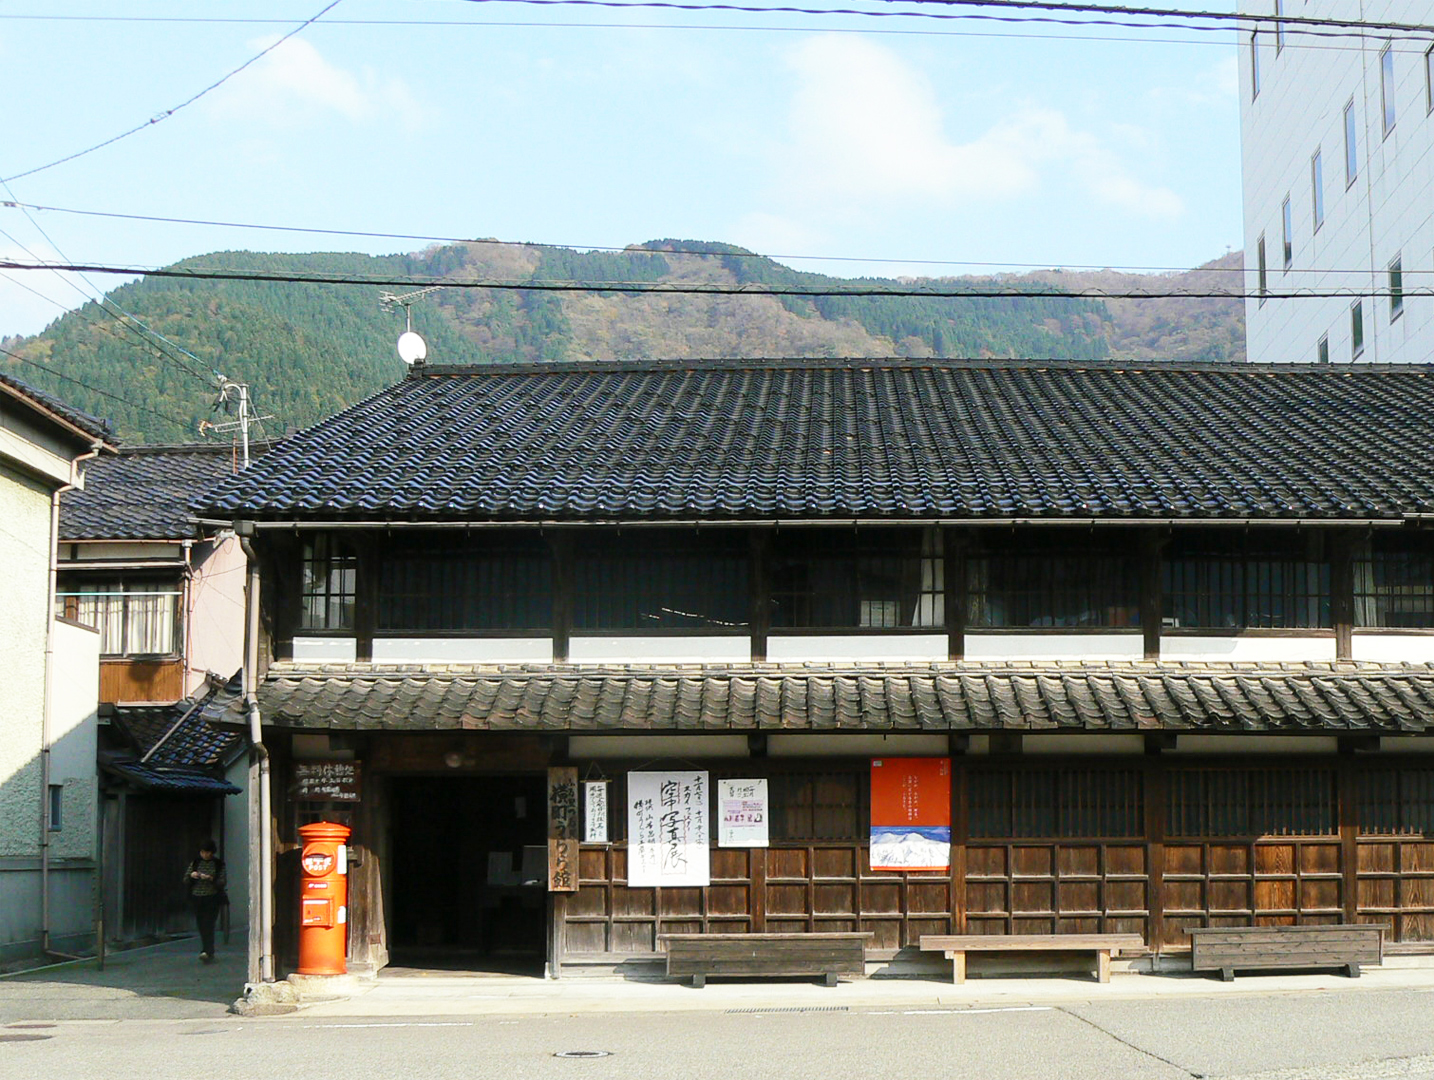 Townscape of Tsurugi